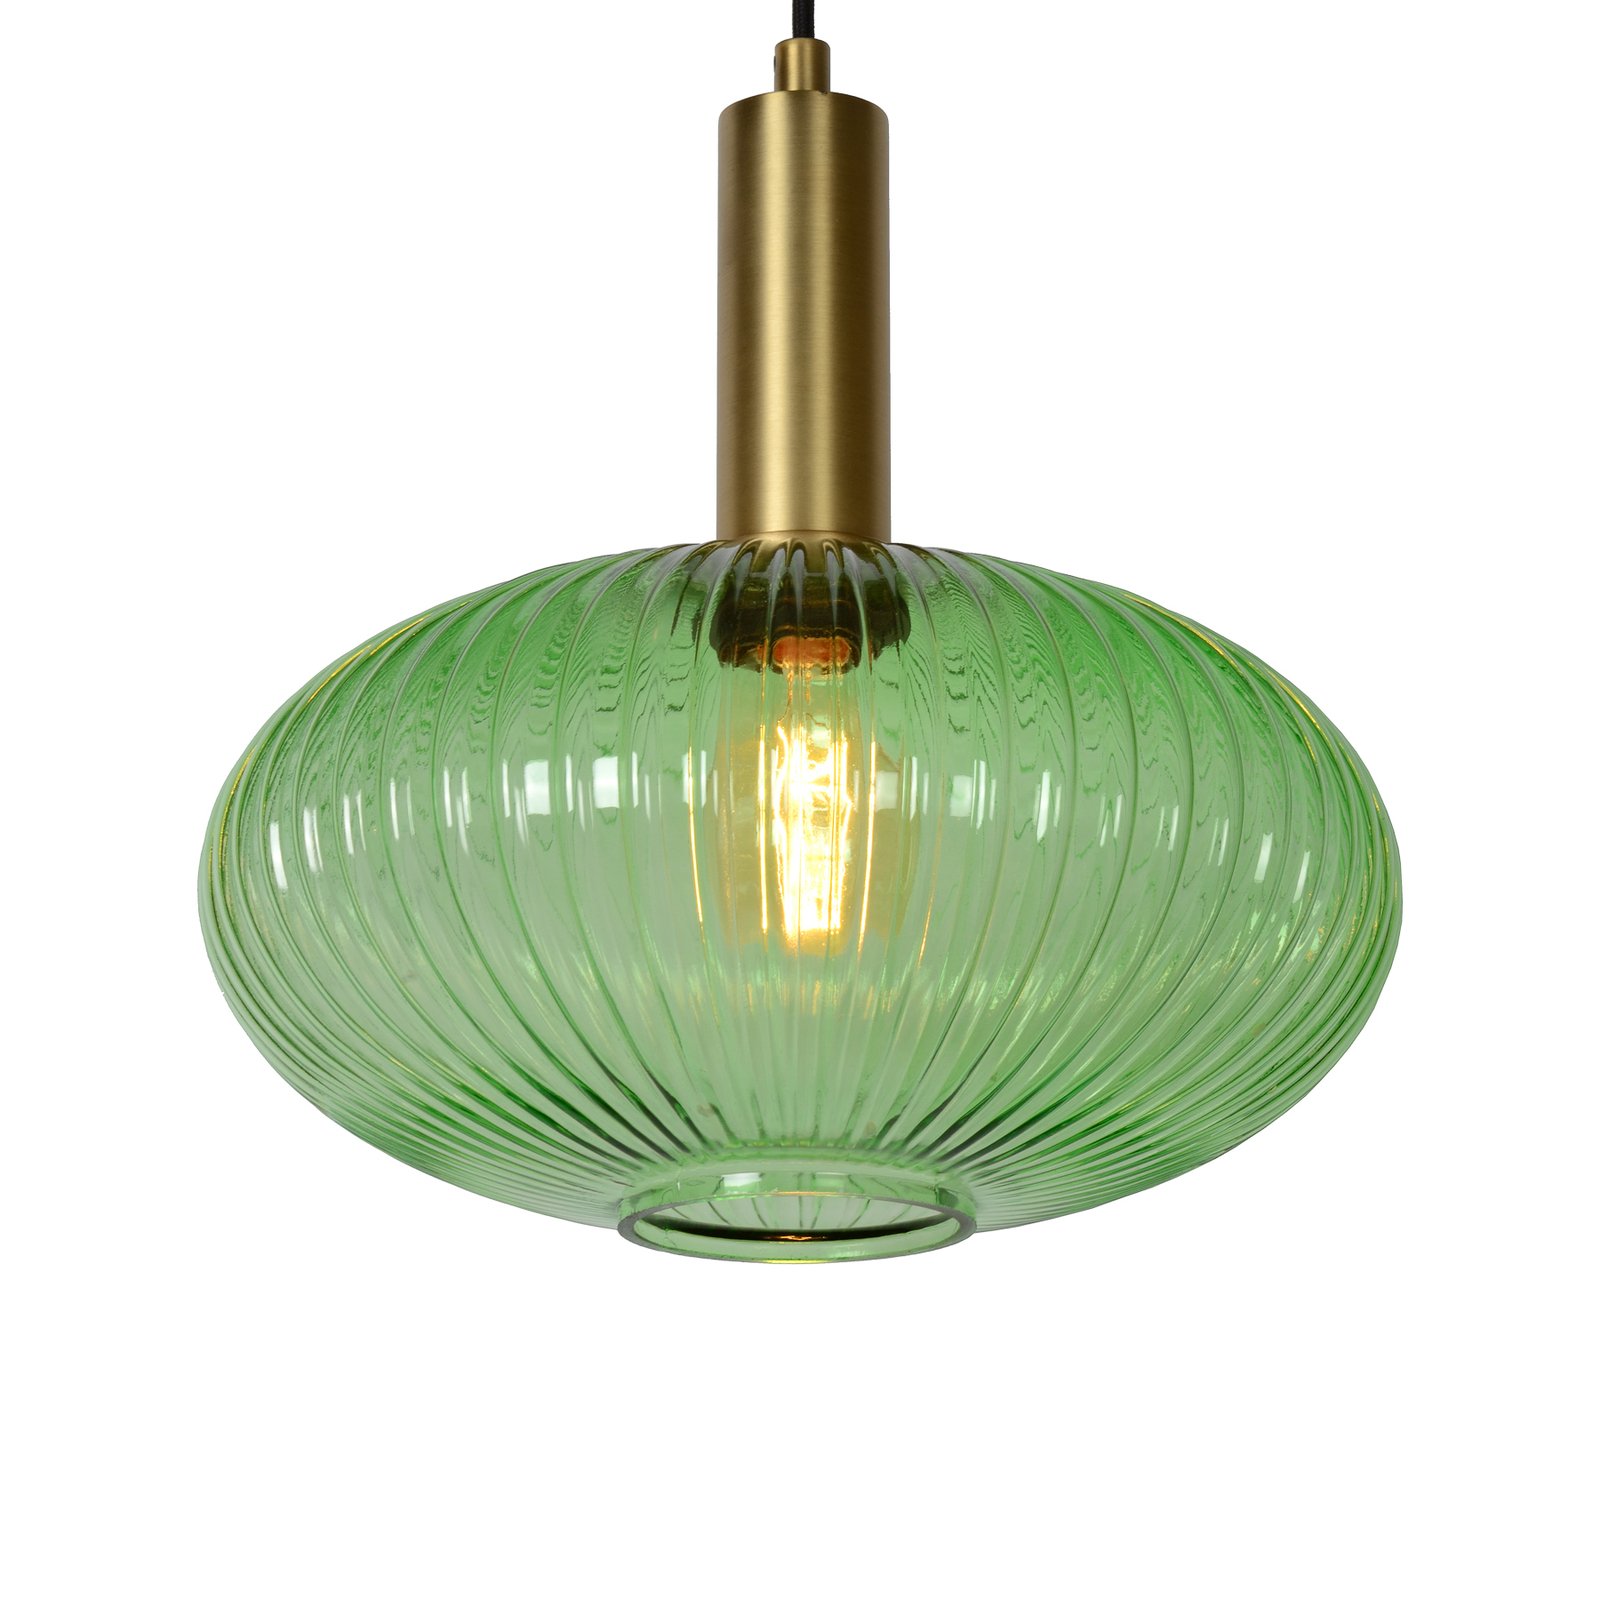 Szklana lampa wisząca Maloto, Ø 30 cm, zielona